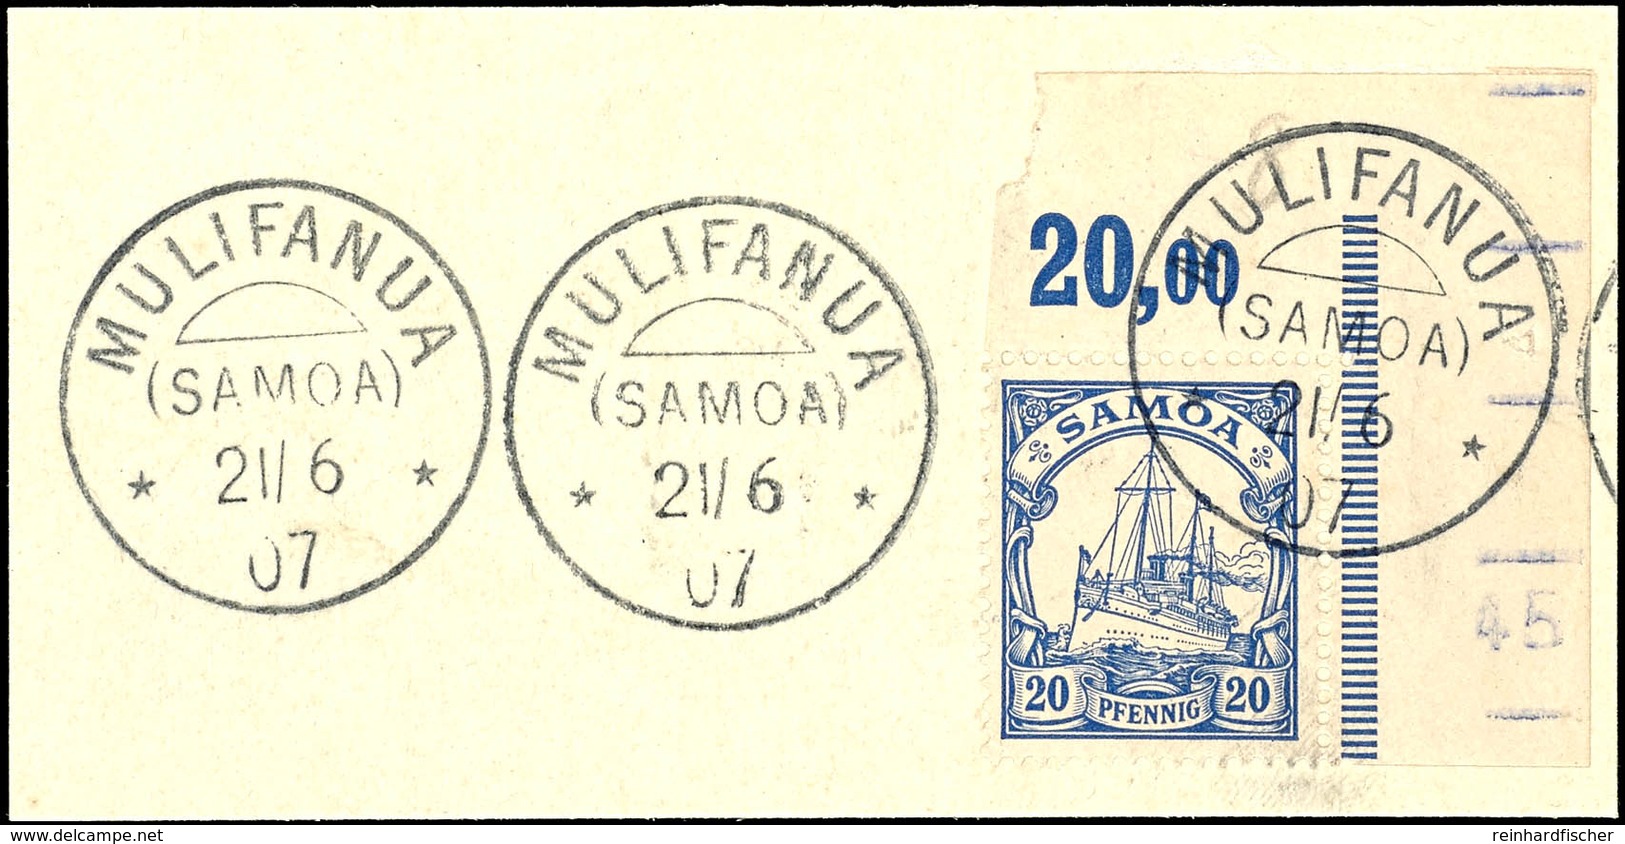 MULIFANUA 21/6 07 Klar Auf Briefstück  Bogenecke 20 Pfg. Schiffszeichnung, Katalog: 10 BS - Samoa